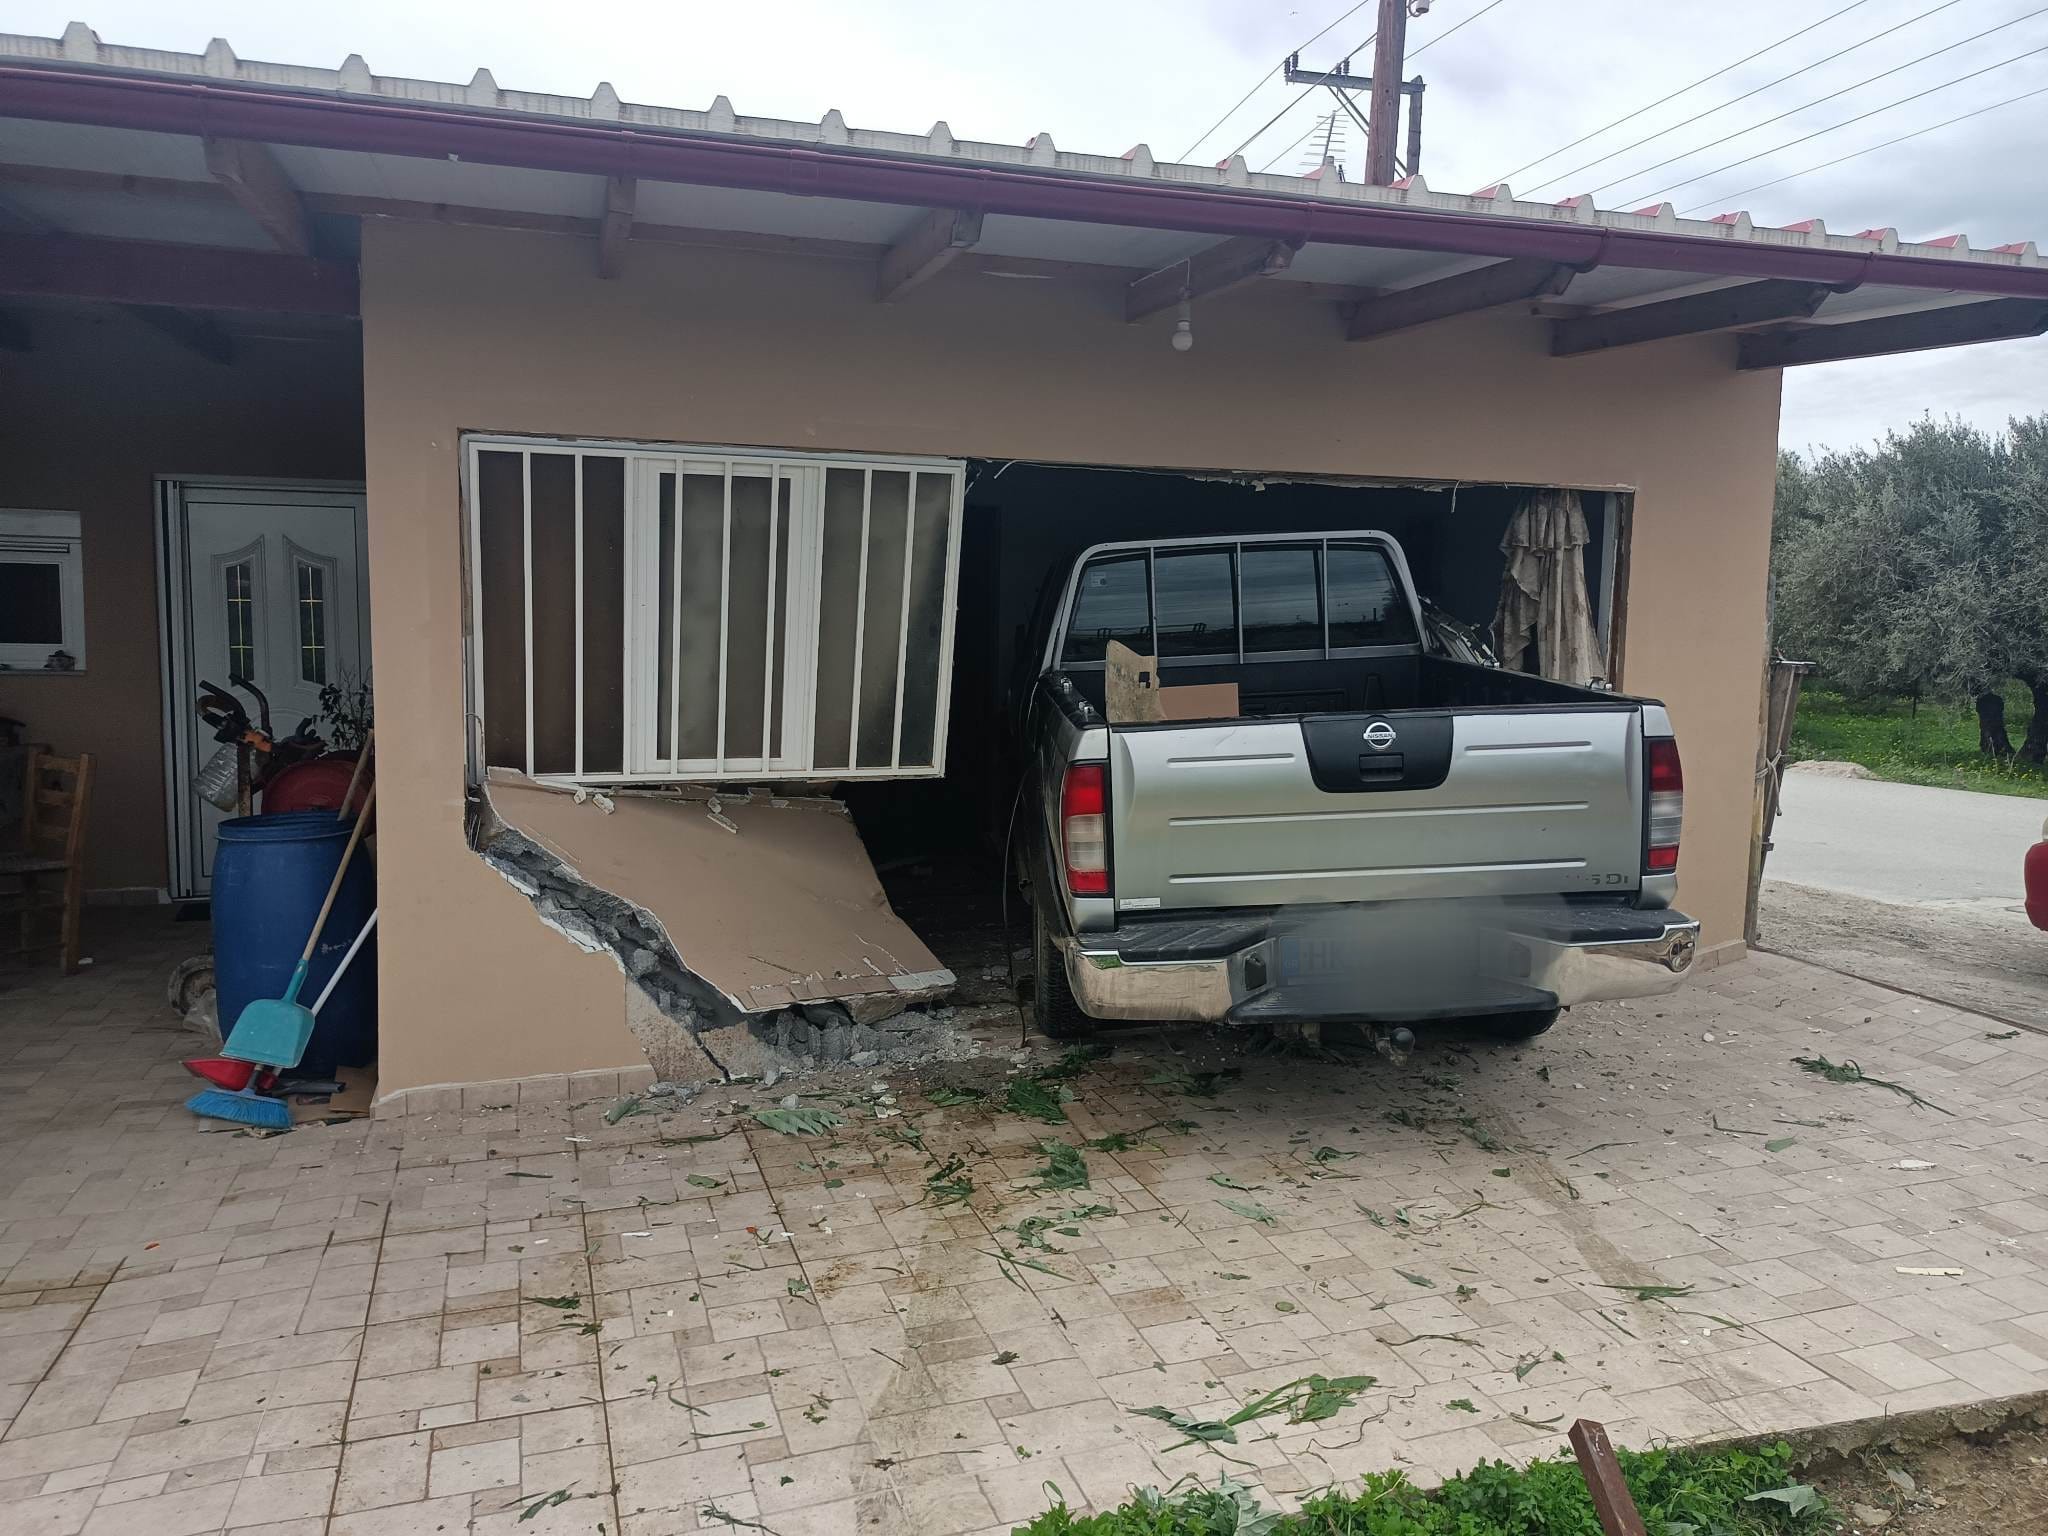 Ηράκλειο: Αγροτικό «μπούκαρε» στο σαλόνι σπιτιού – Ο οδηγός έχασε τον έλεγχο